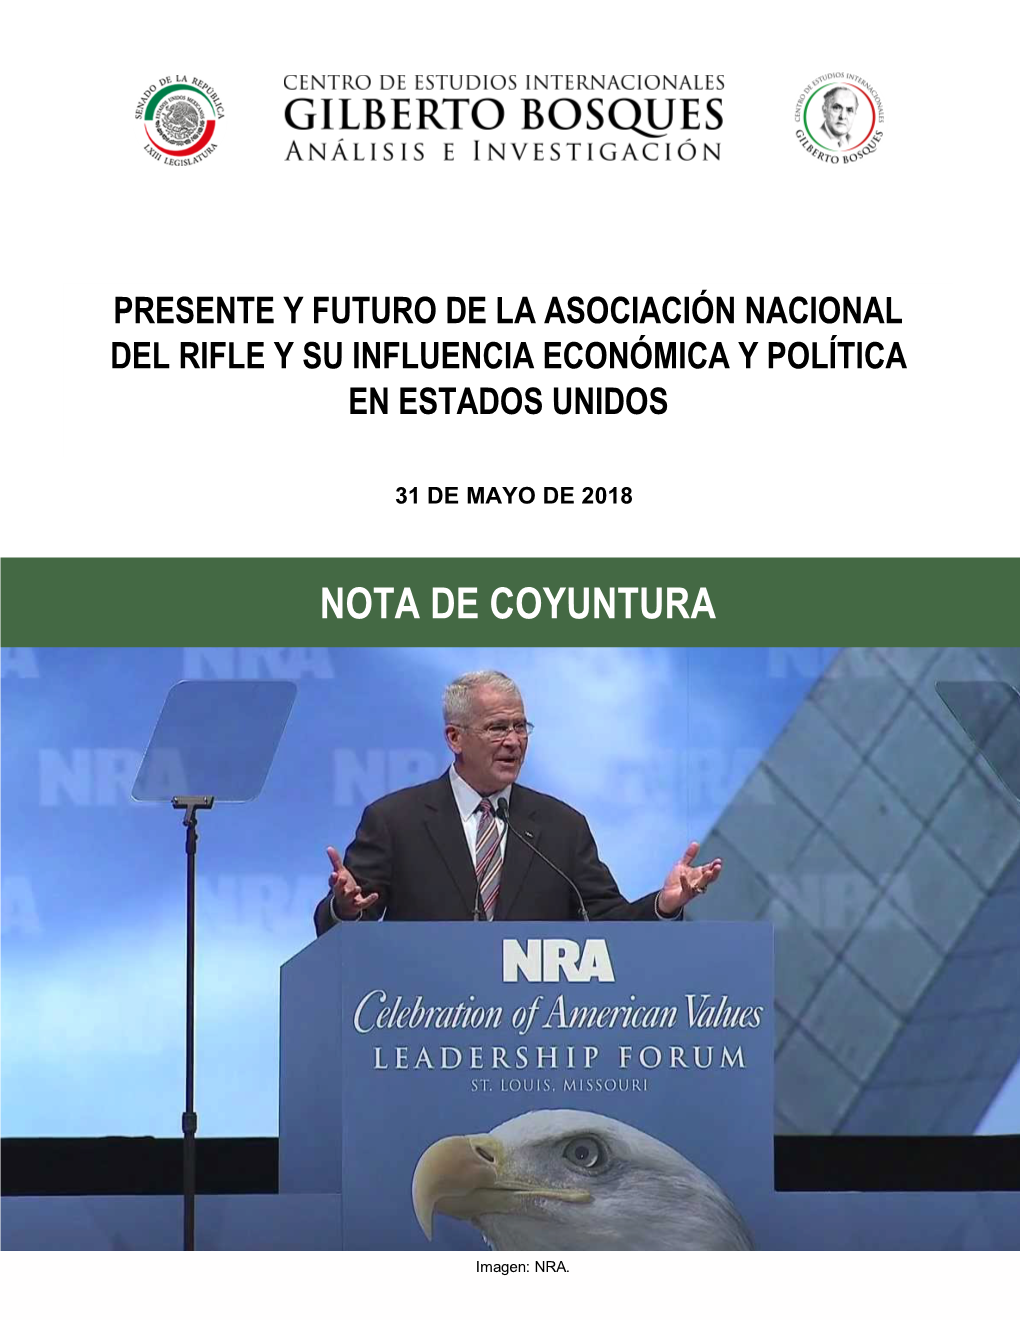 Presente Y Futuro De La Asociación Nacional Del Rifle Y Su Influencia Económica Y Política En Estados Unidos ", México, Senado De La República, 31 De Mayo De 2018